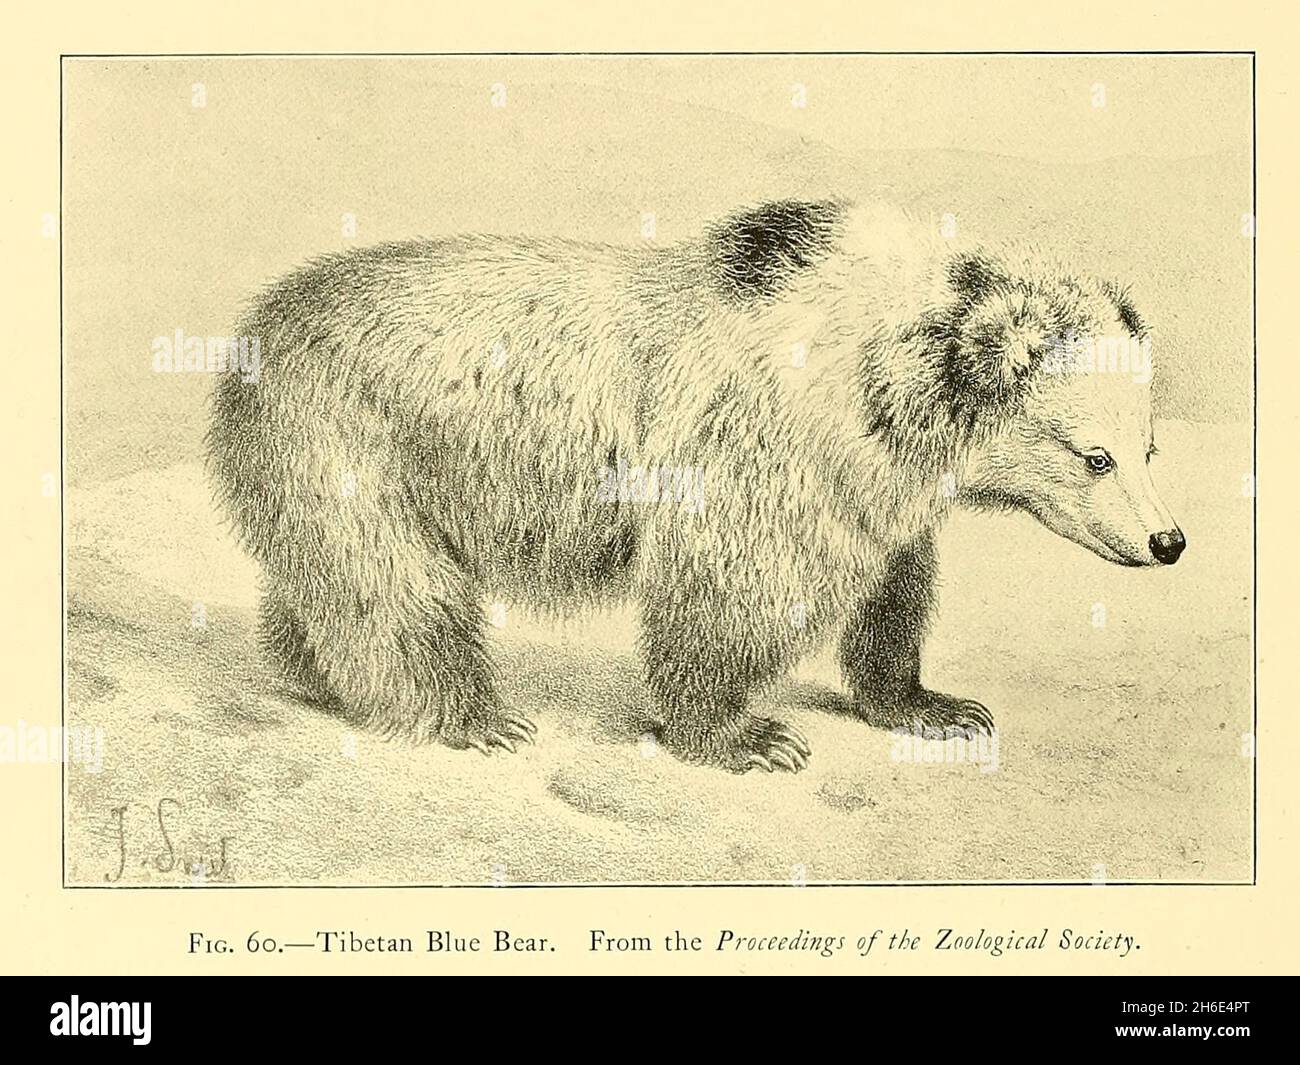 El oso tibetano o oso azul tibetano (Ursus arctos pruinosus) es una subespecie del oso marrón (Ursus arctos) que se encuentra en la meseta tibetana oriental. También es conocido como el oso azul del Himalaya, el oso de nieve del Himalaya, el oso marrón tibetano o el oso del caballo. En tibetano, es conocido como Dom gyamuk. Del libro ' El gran y pequeño juego de la India, Birmania, y Tibet ' por Richard Lydekker, publicado en Londres por R. Ward en 1900 Foto de stock